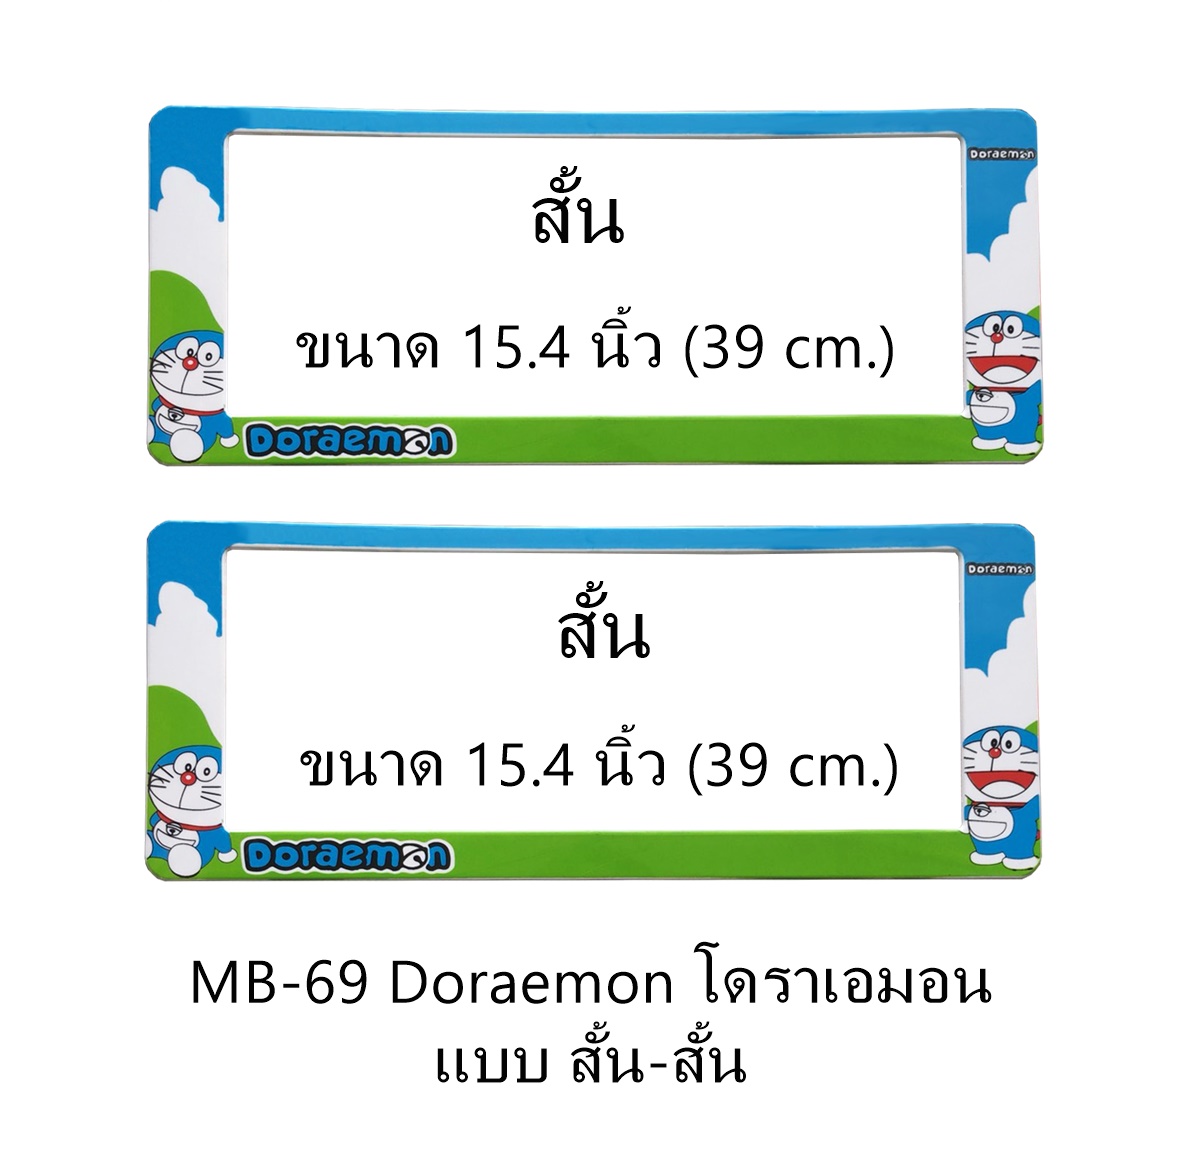 กรอบป้ายทะเบียนรถยนต์กันน้ำ MB-69 Doraemon มี 3 แบบ สั้นสั้น ระบบล็อค 8 จุด อะไหล่ครบ